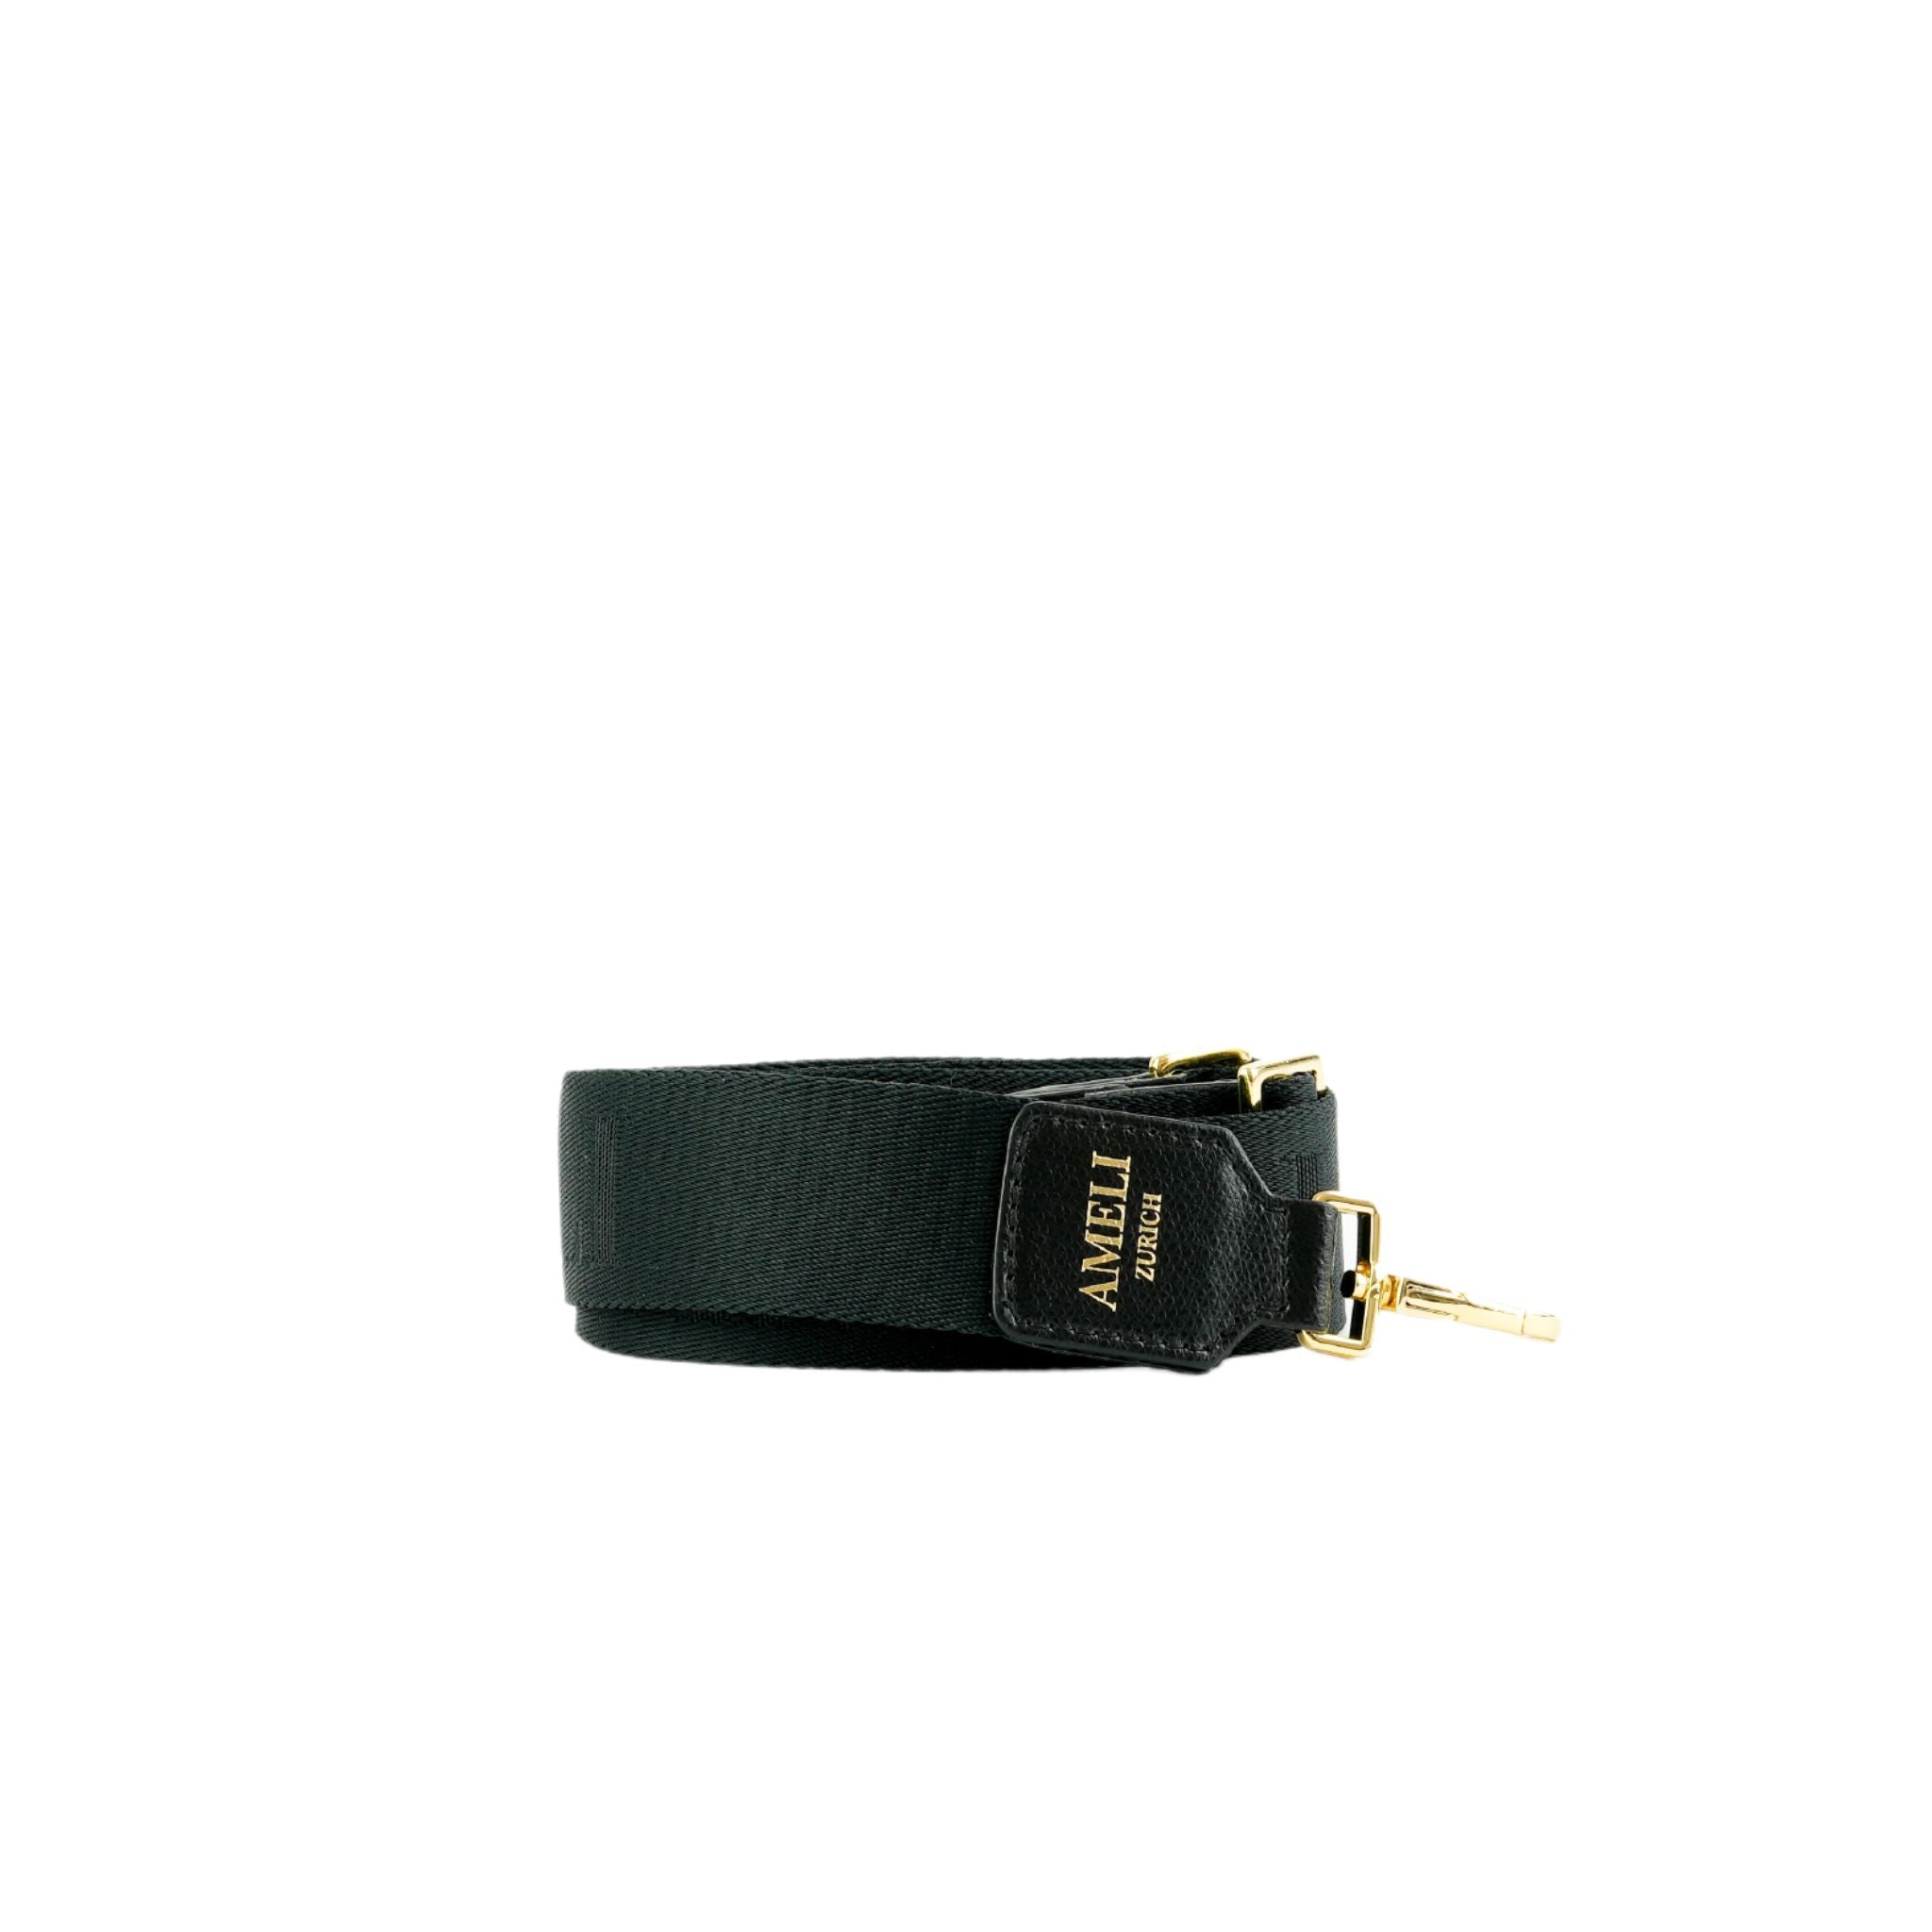 AMELI Zurich | Adjustable Strap | Black | Pebbled Leather